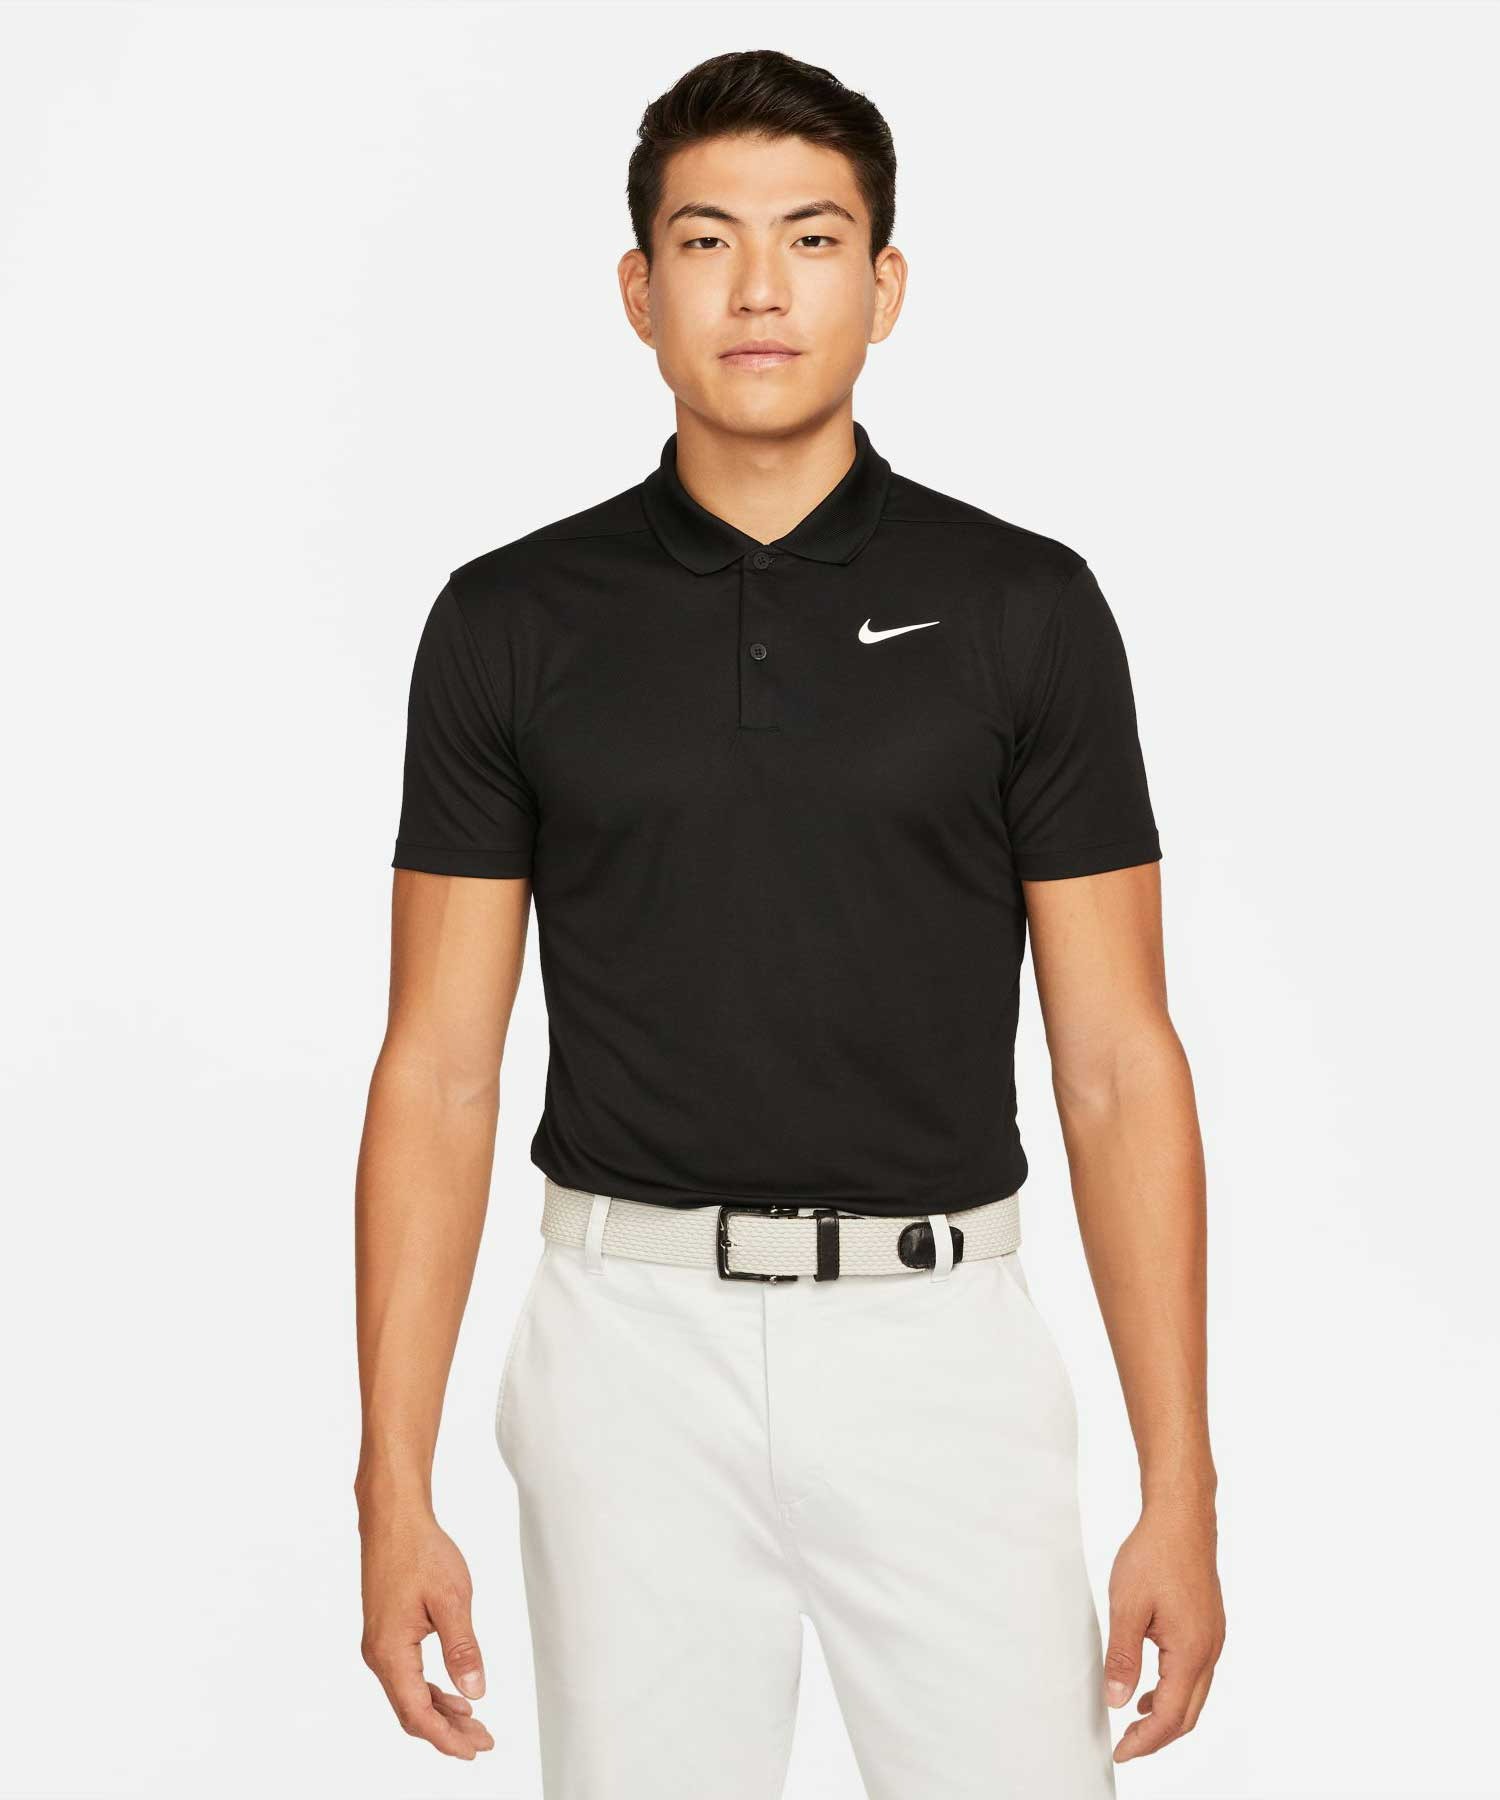 マーケット NIKEナイキ ドライ-フィット ビクトリー メンズ 数量限定価格 スリムフィット ゴルフポロ Nike Golf Dri-FIT Victory Men's Slim-Fit Polo